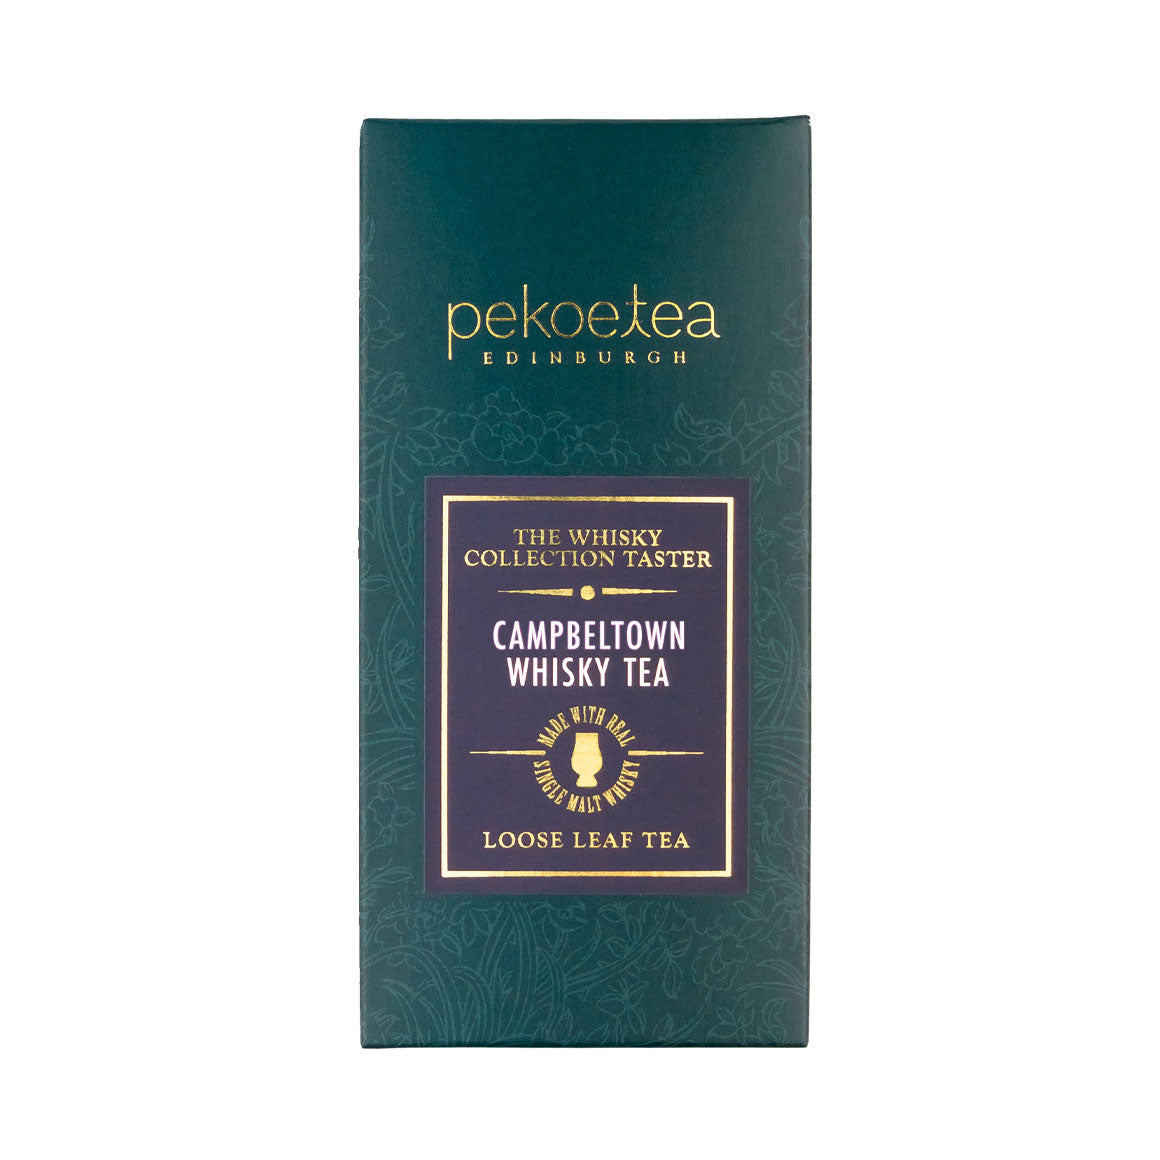 PekoeTea Edinburgh Whisky Tea Collection Campbeltown Loose Leaf Taster Box